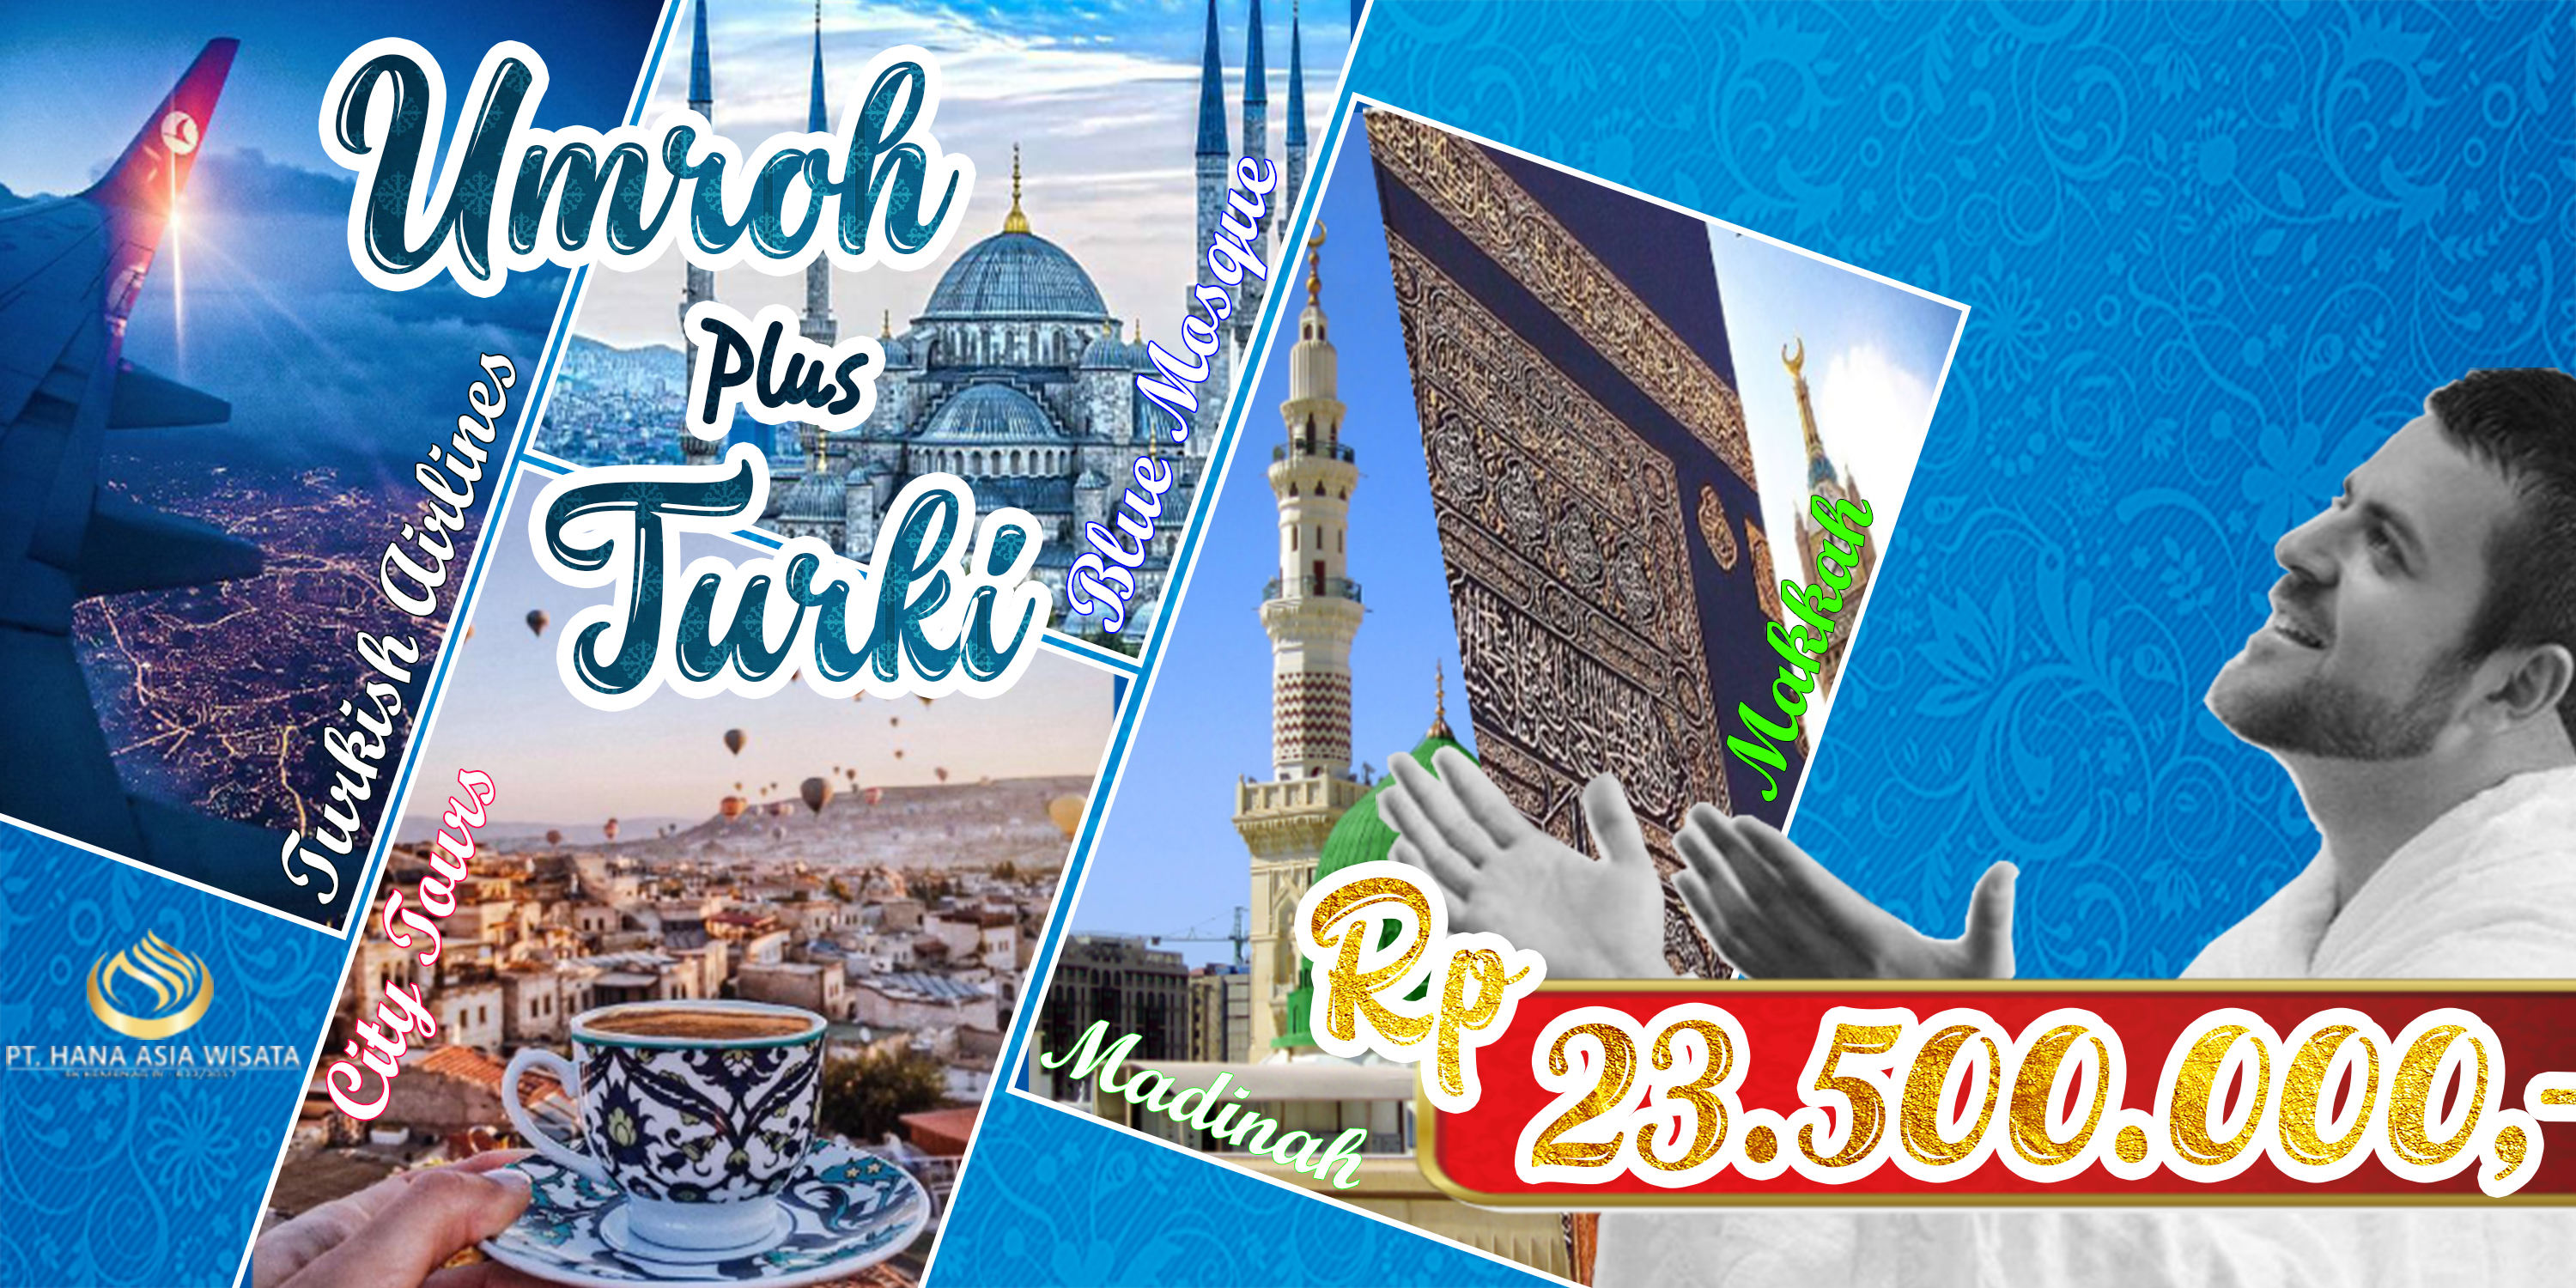 Paket Umroh Plus Turki 2018